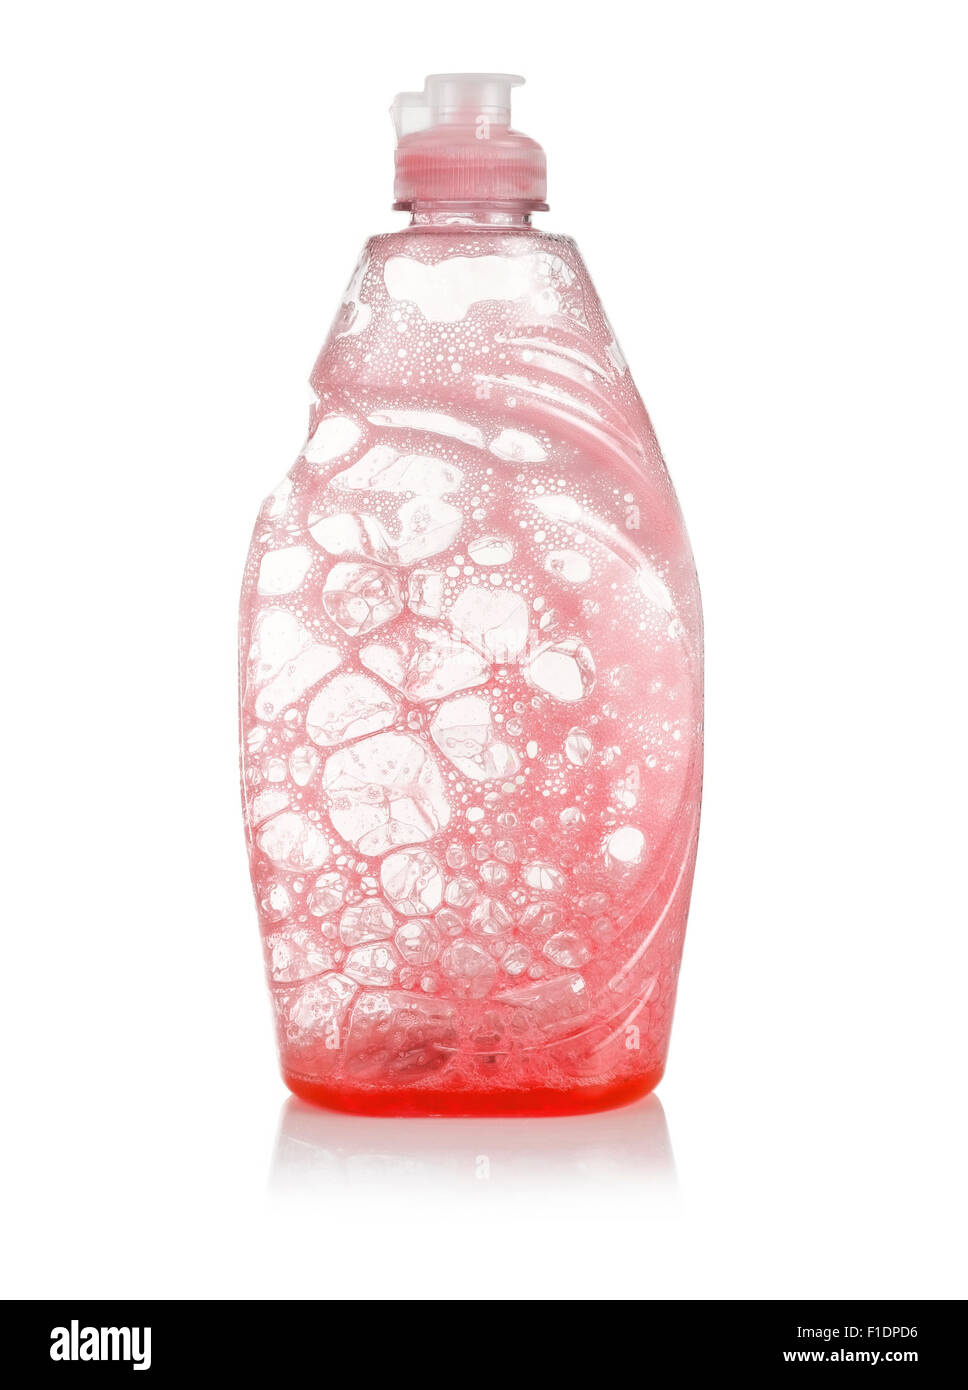 Detergente rojo vacío Foto de stock